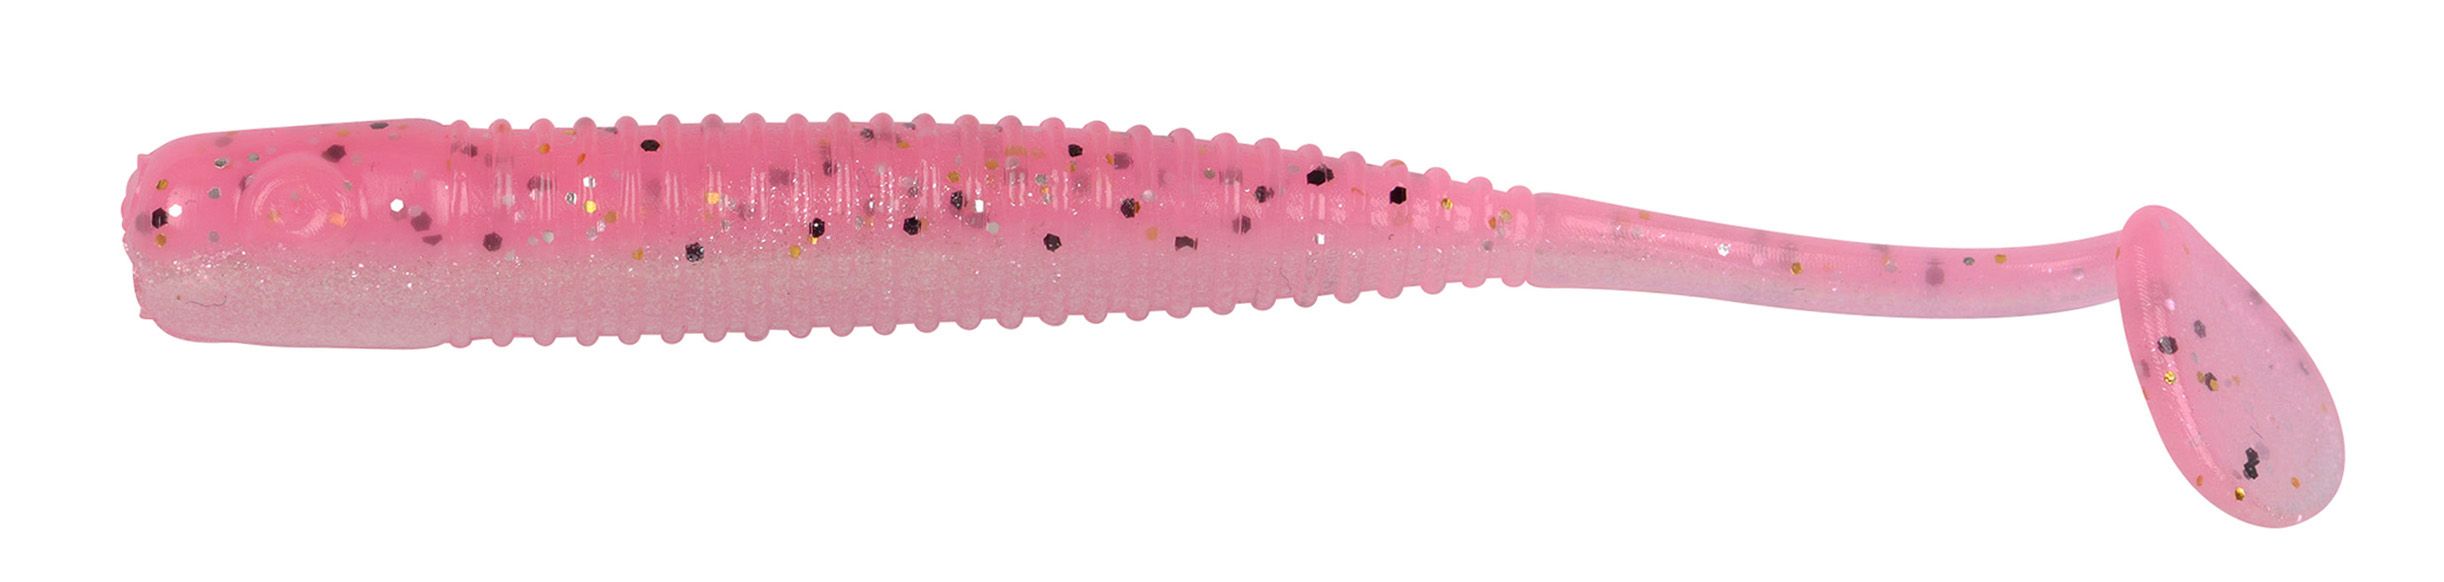 Spro FreeStyle Urban Prey Slug Shad 7.3cm (4 pcs) - Pink